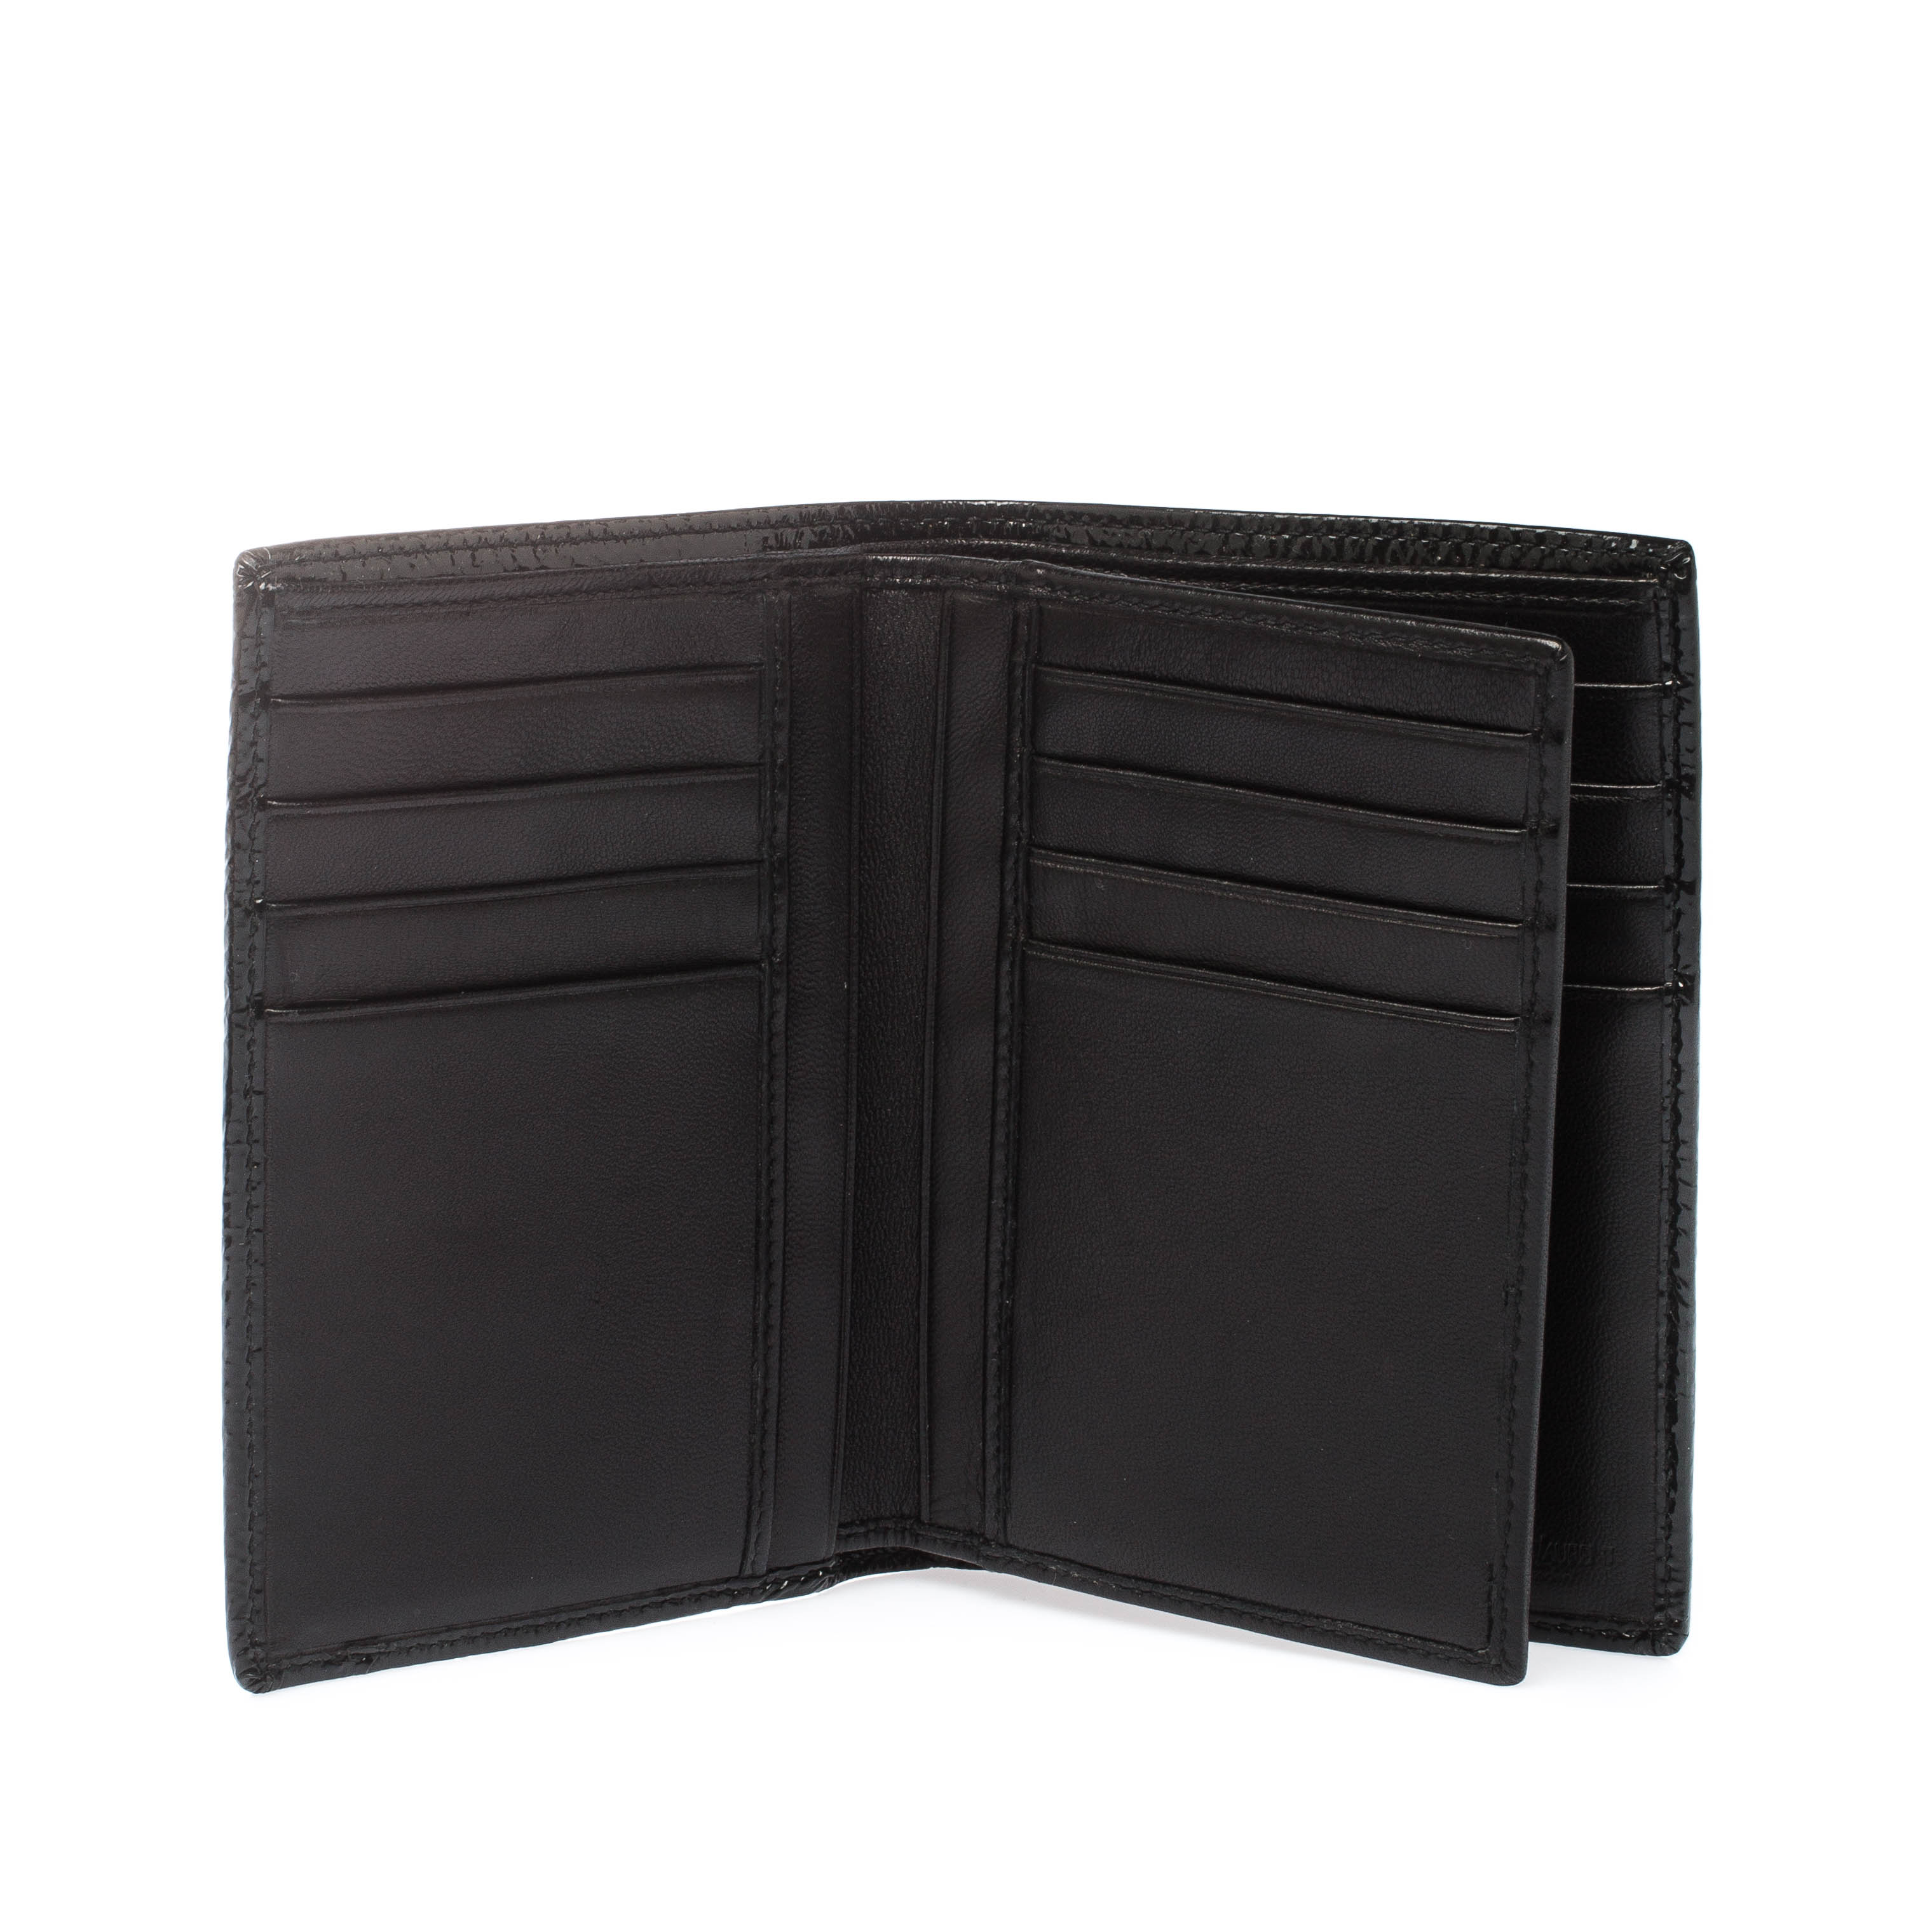 

Saint Laurent Paris Black Patent Leather Bifold Wallet